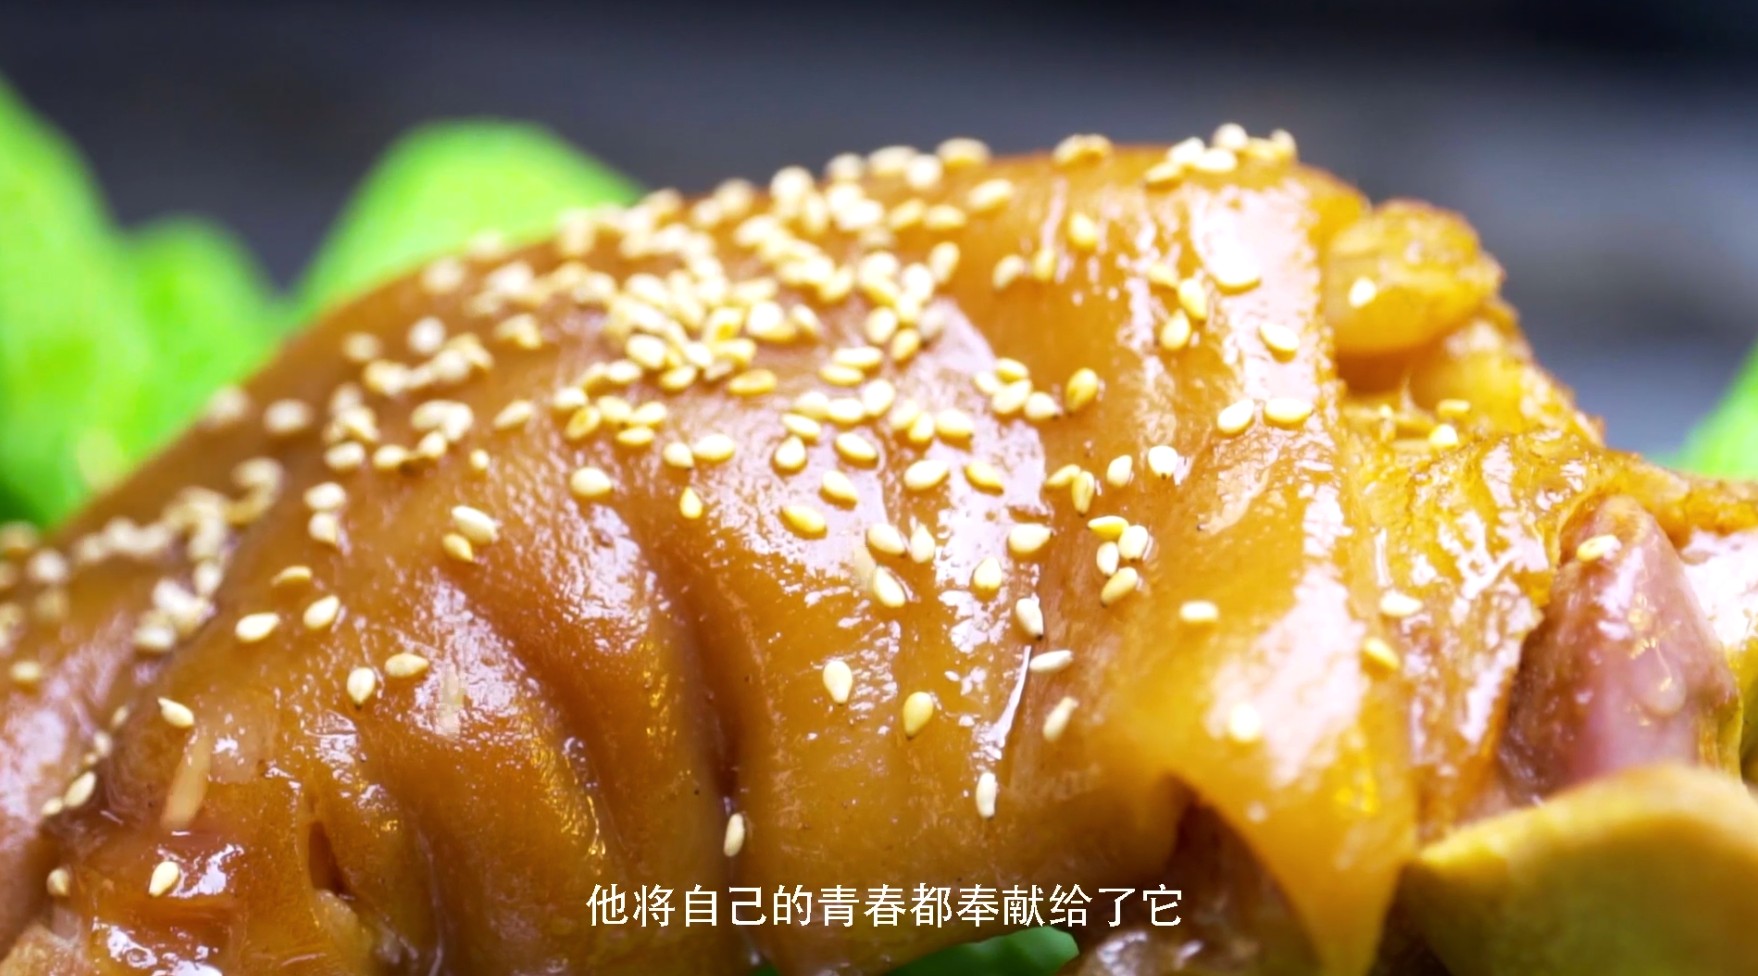 美食纪录片《百味珠城》之二师兄烤猪蹄 